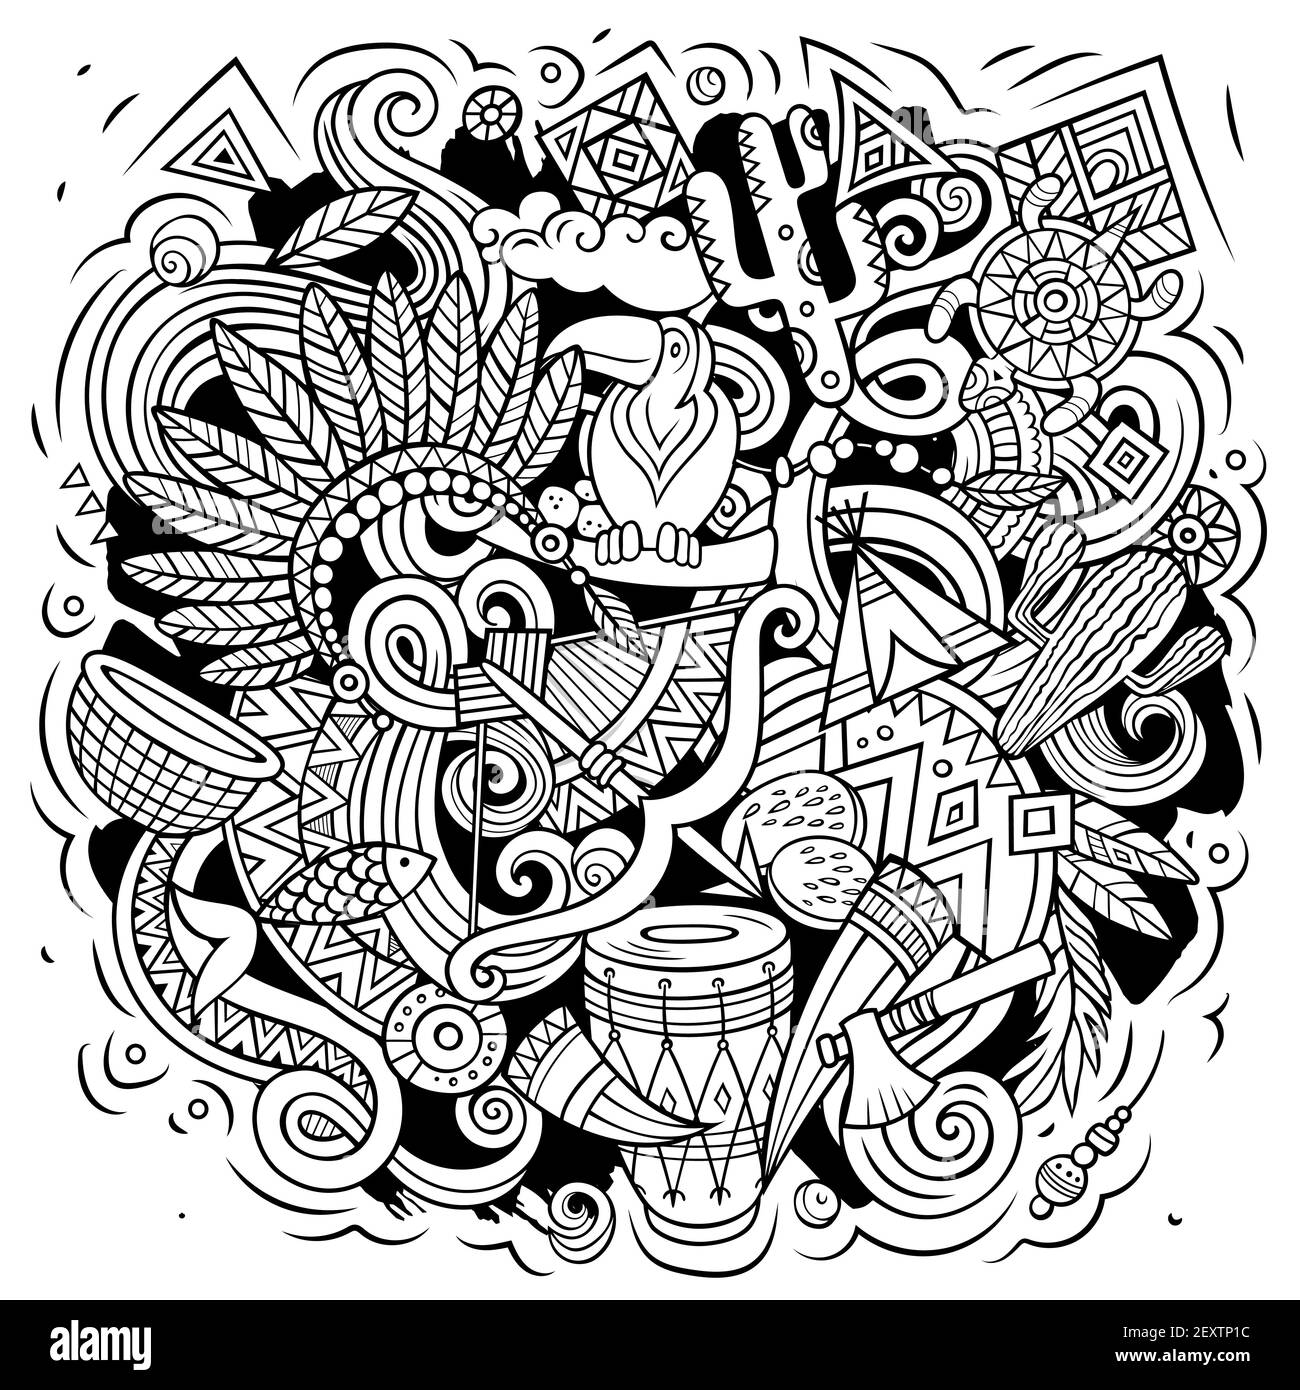 Native American Cartoon Vektor Doodle Design. Skizzenhafte, detailreiche Komposition mit vielen ethnischen Objekten und Symbolen. Stock Vektor